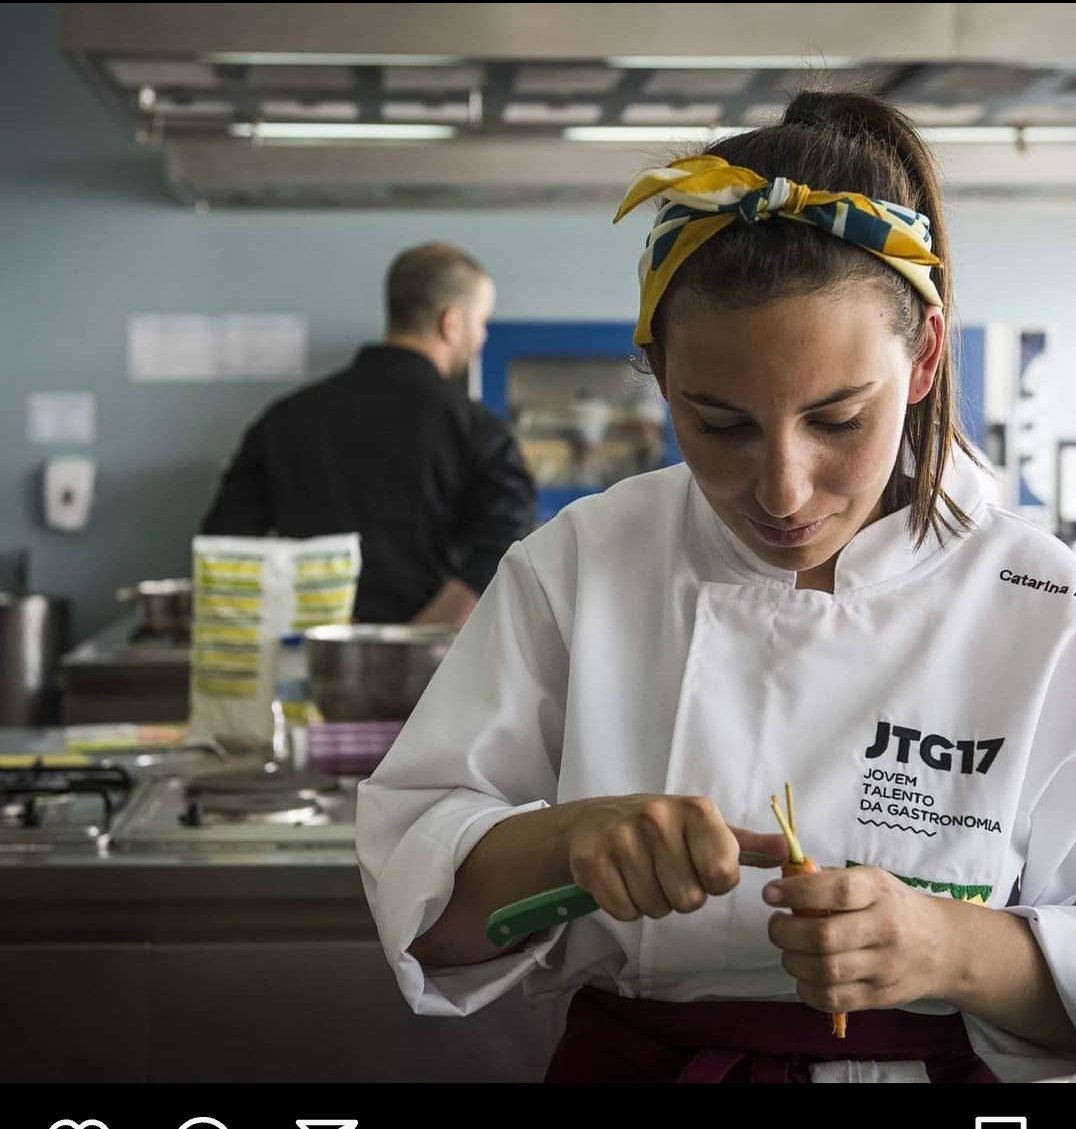 Sim trogloditas ignóbeis,
   A Miranda participou no Jovem Talento da Gastronomia em 2019 concurso que decorreu na Escola De Hotelaria e de Portalegre em que a minha turma de Gestão Hoteleira ficou encarregue de auxiliar os participantes 
#bbtvi